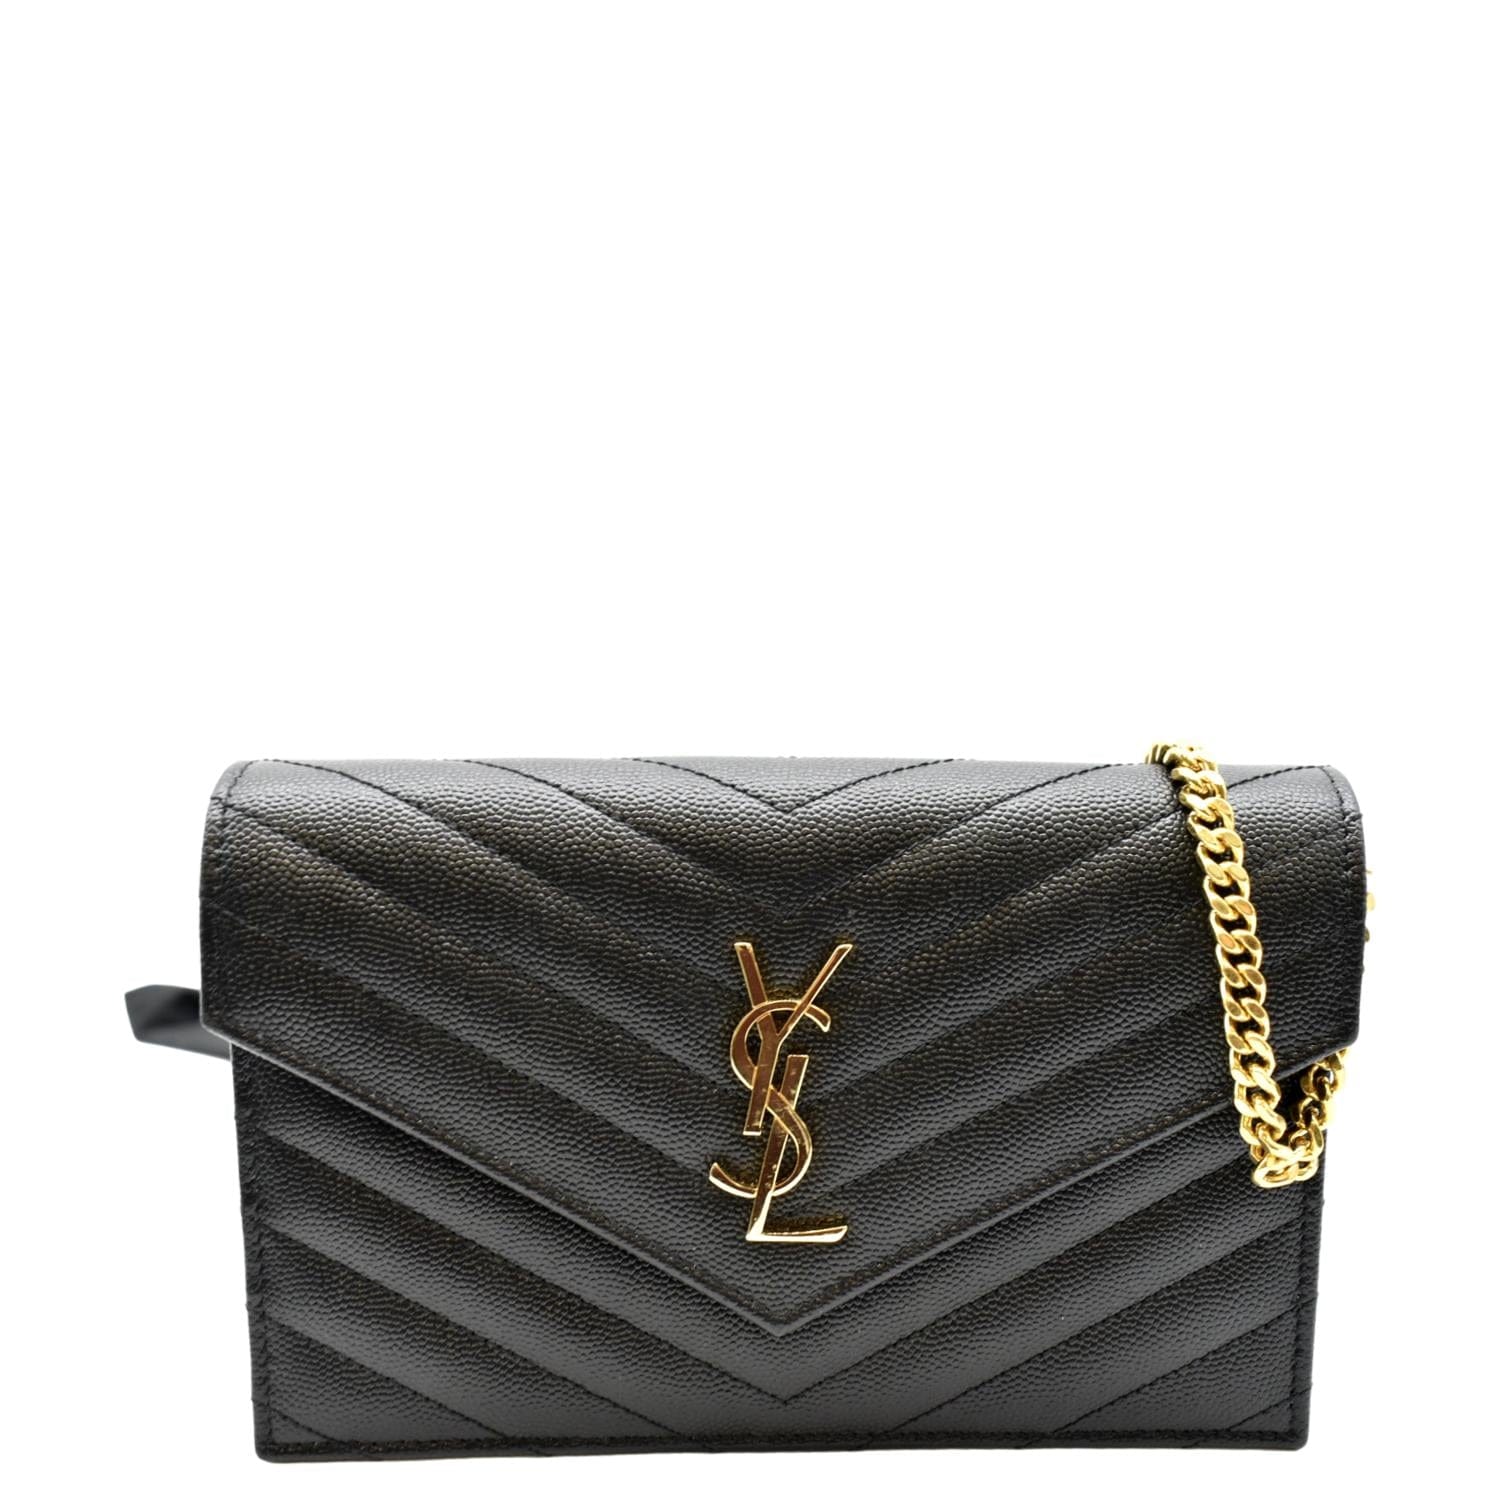 YSL Cassandre Matelasse Chain Wallet Crossbody Bag Black